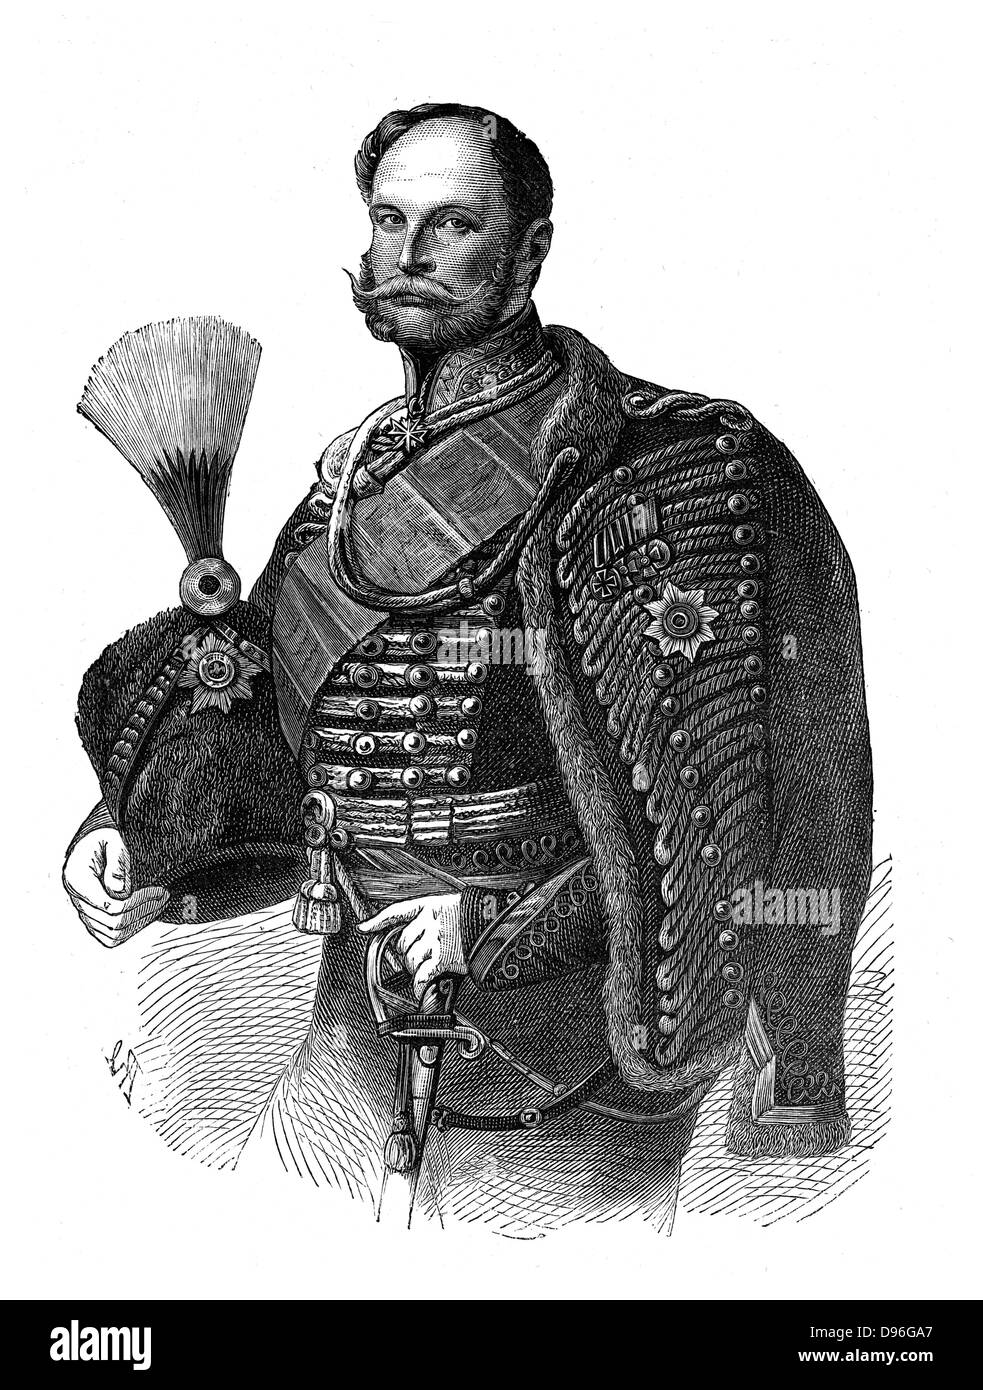 Wilhelm i. (1797-1888) König von Preußen von 1861. Erster Kaiser von Deutschland aus dem Jahr 1871. Gravur. Stockfoto